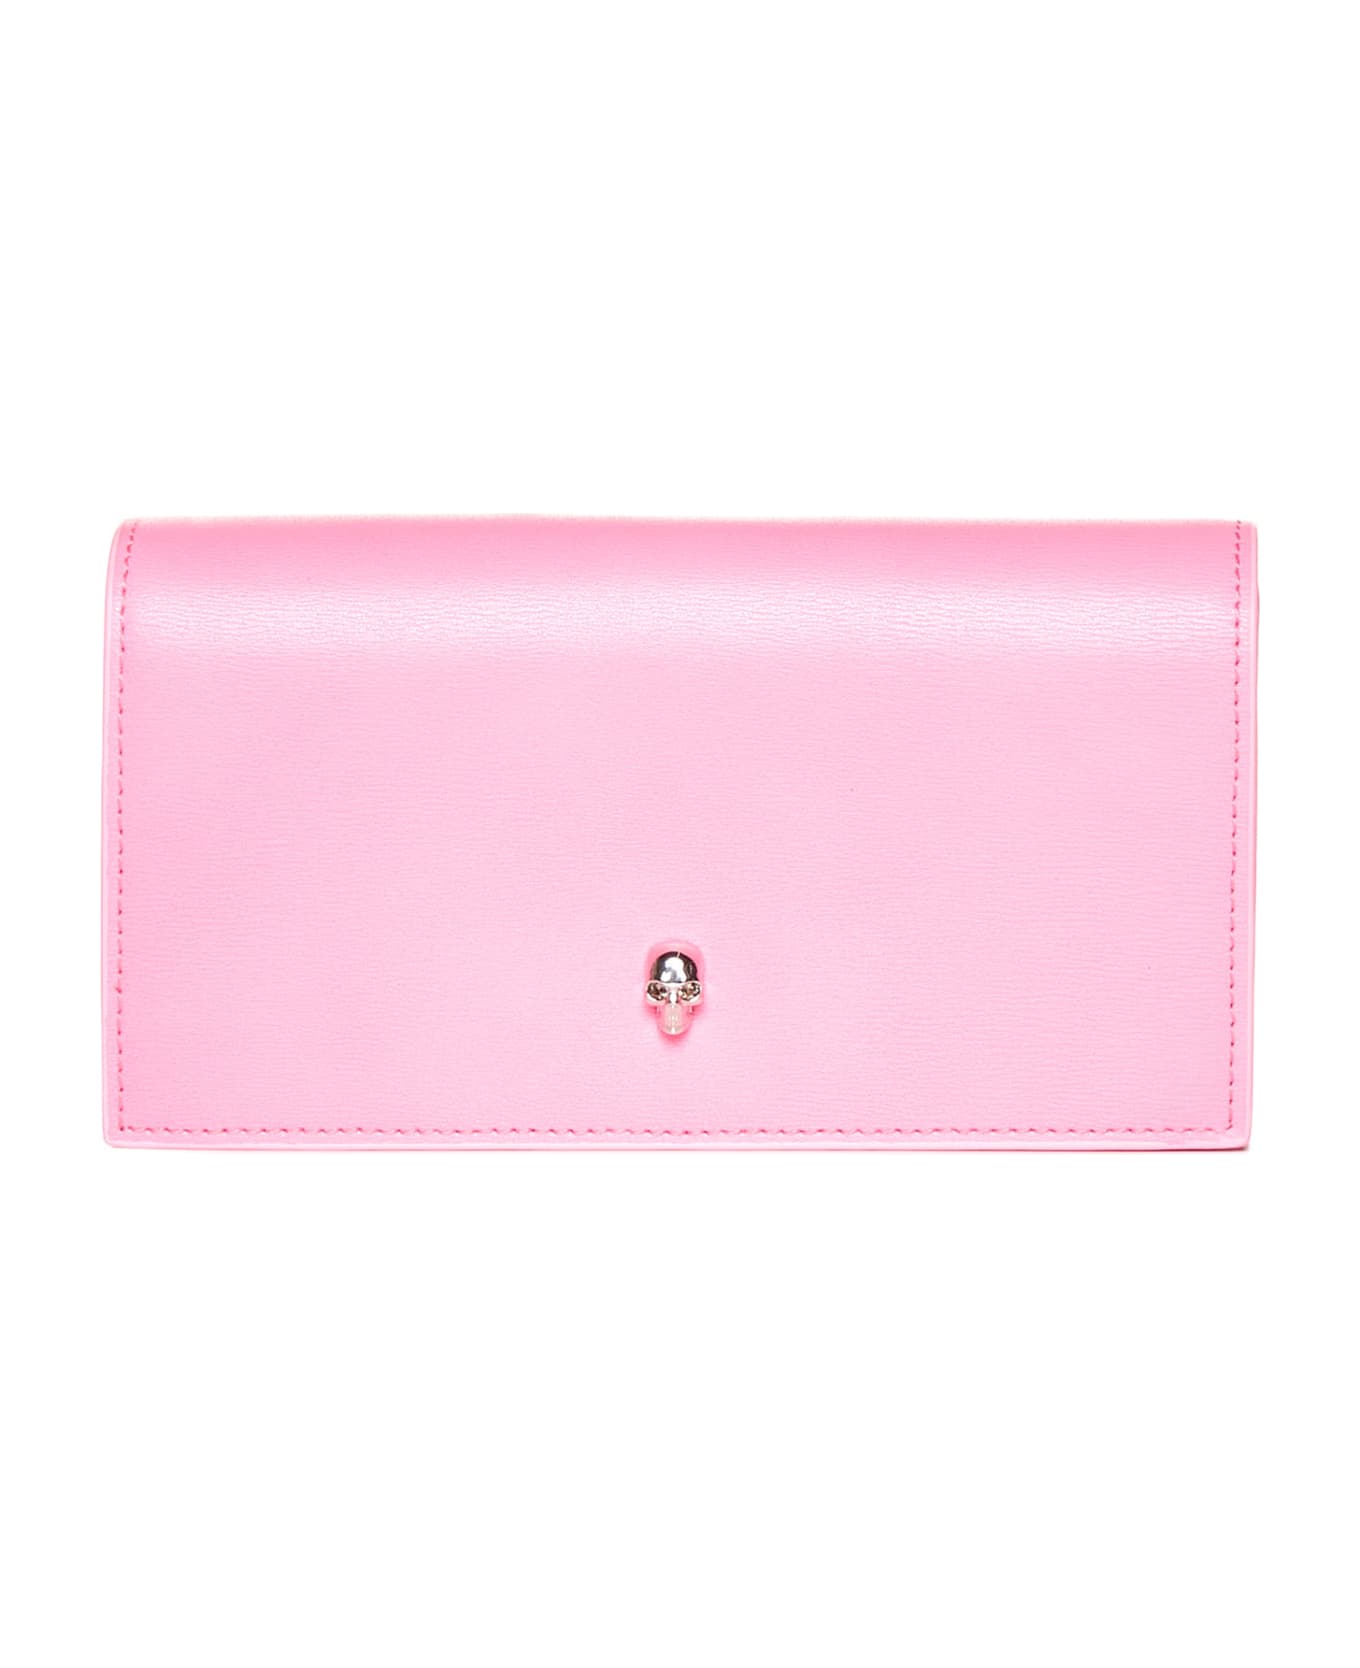 Alexander McQueen Wallet - Fluo pink